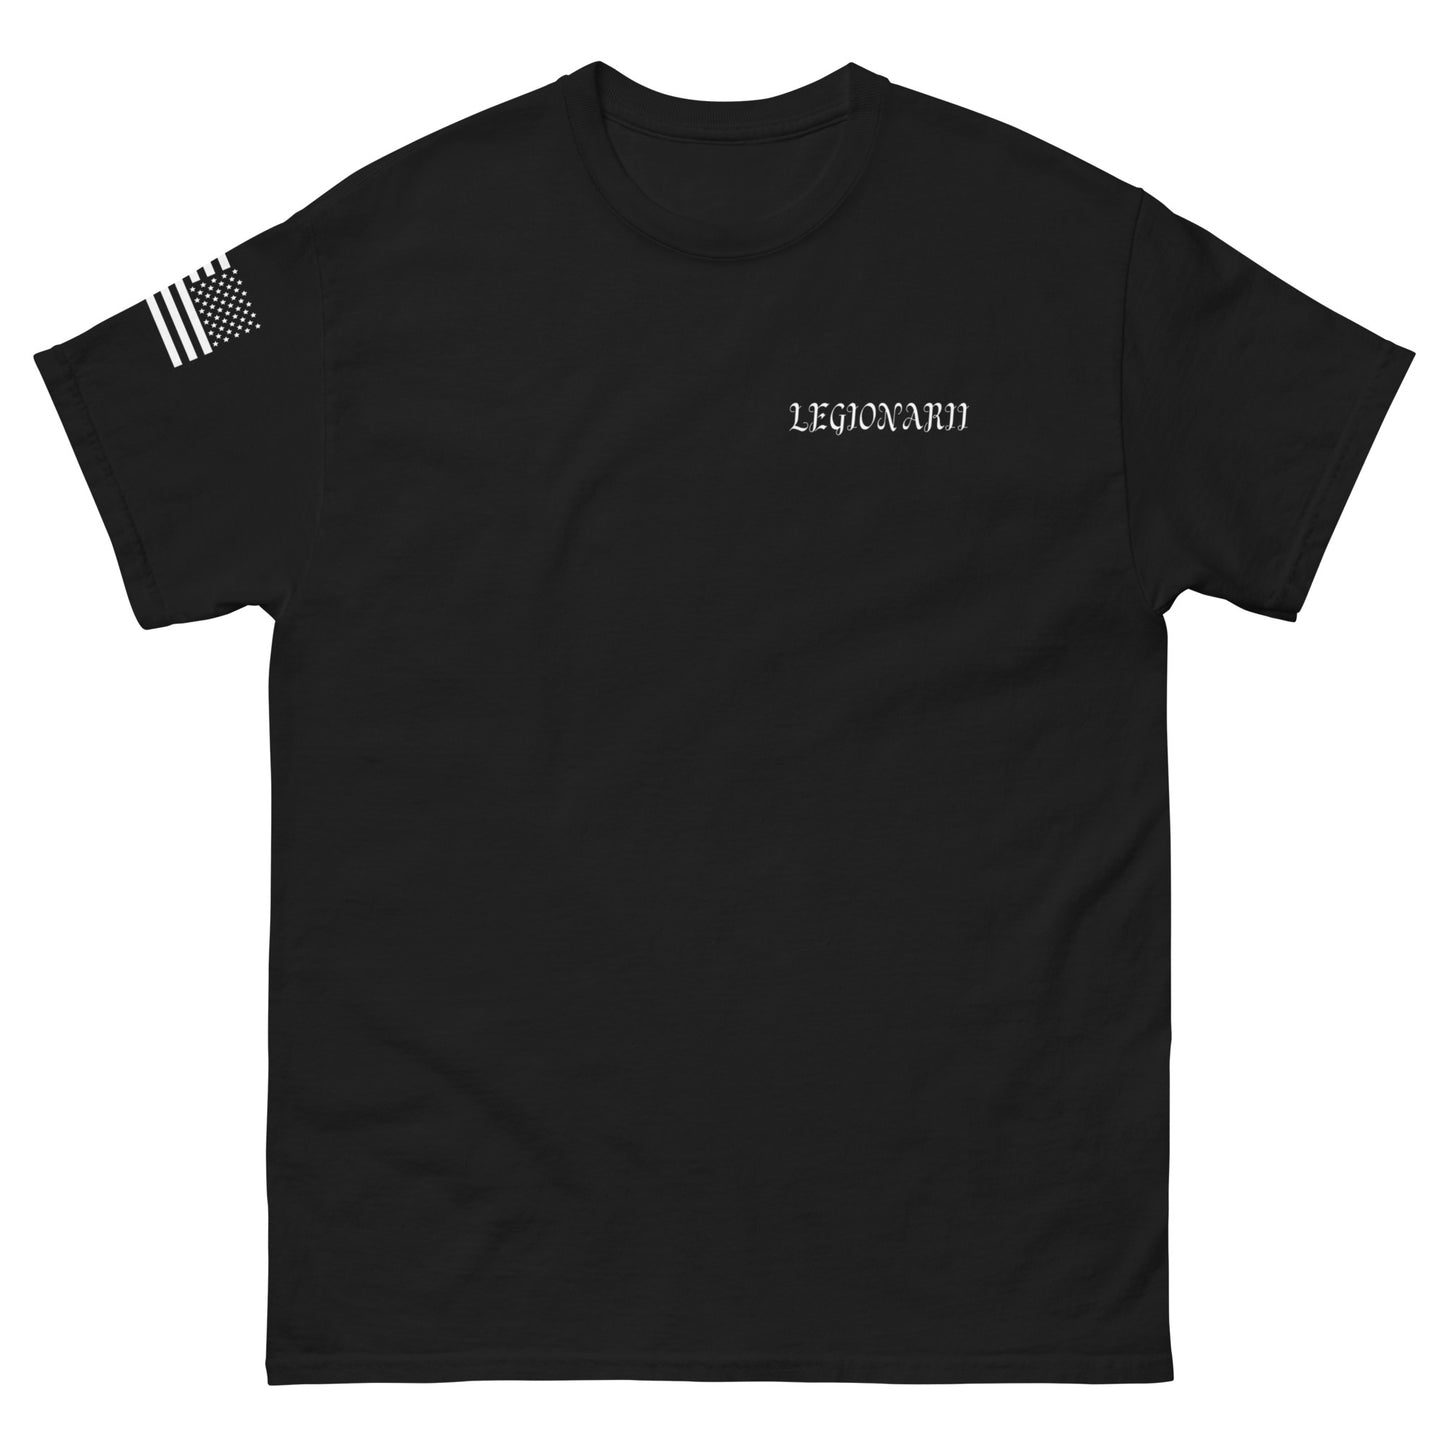 Momento Mori - Legionarii T-Shirt